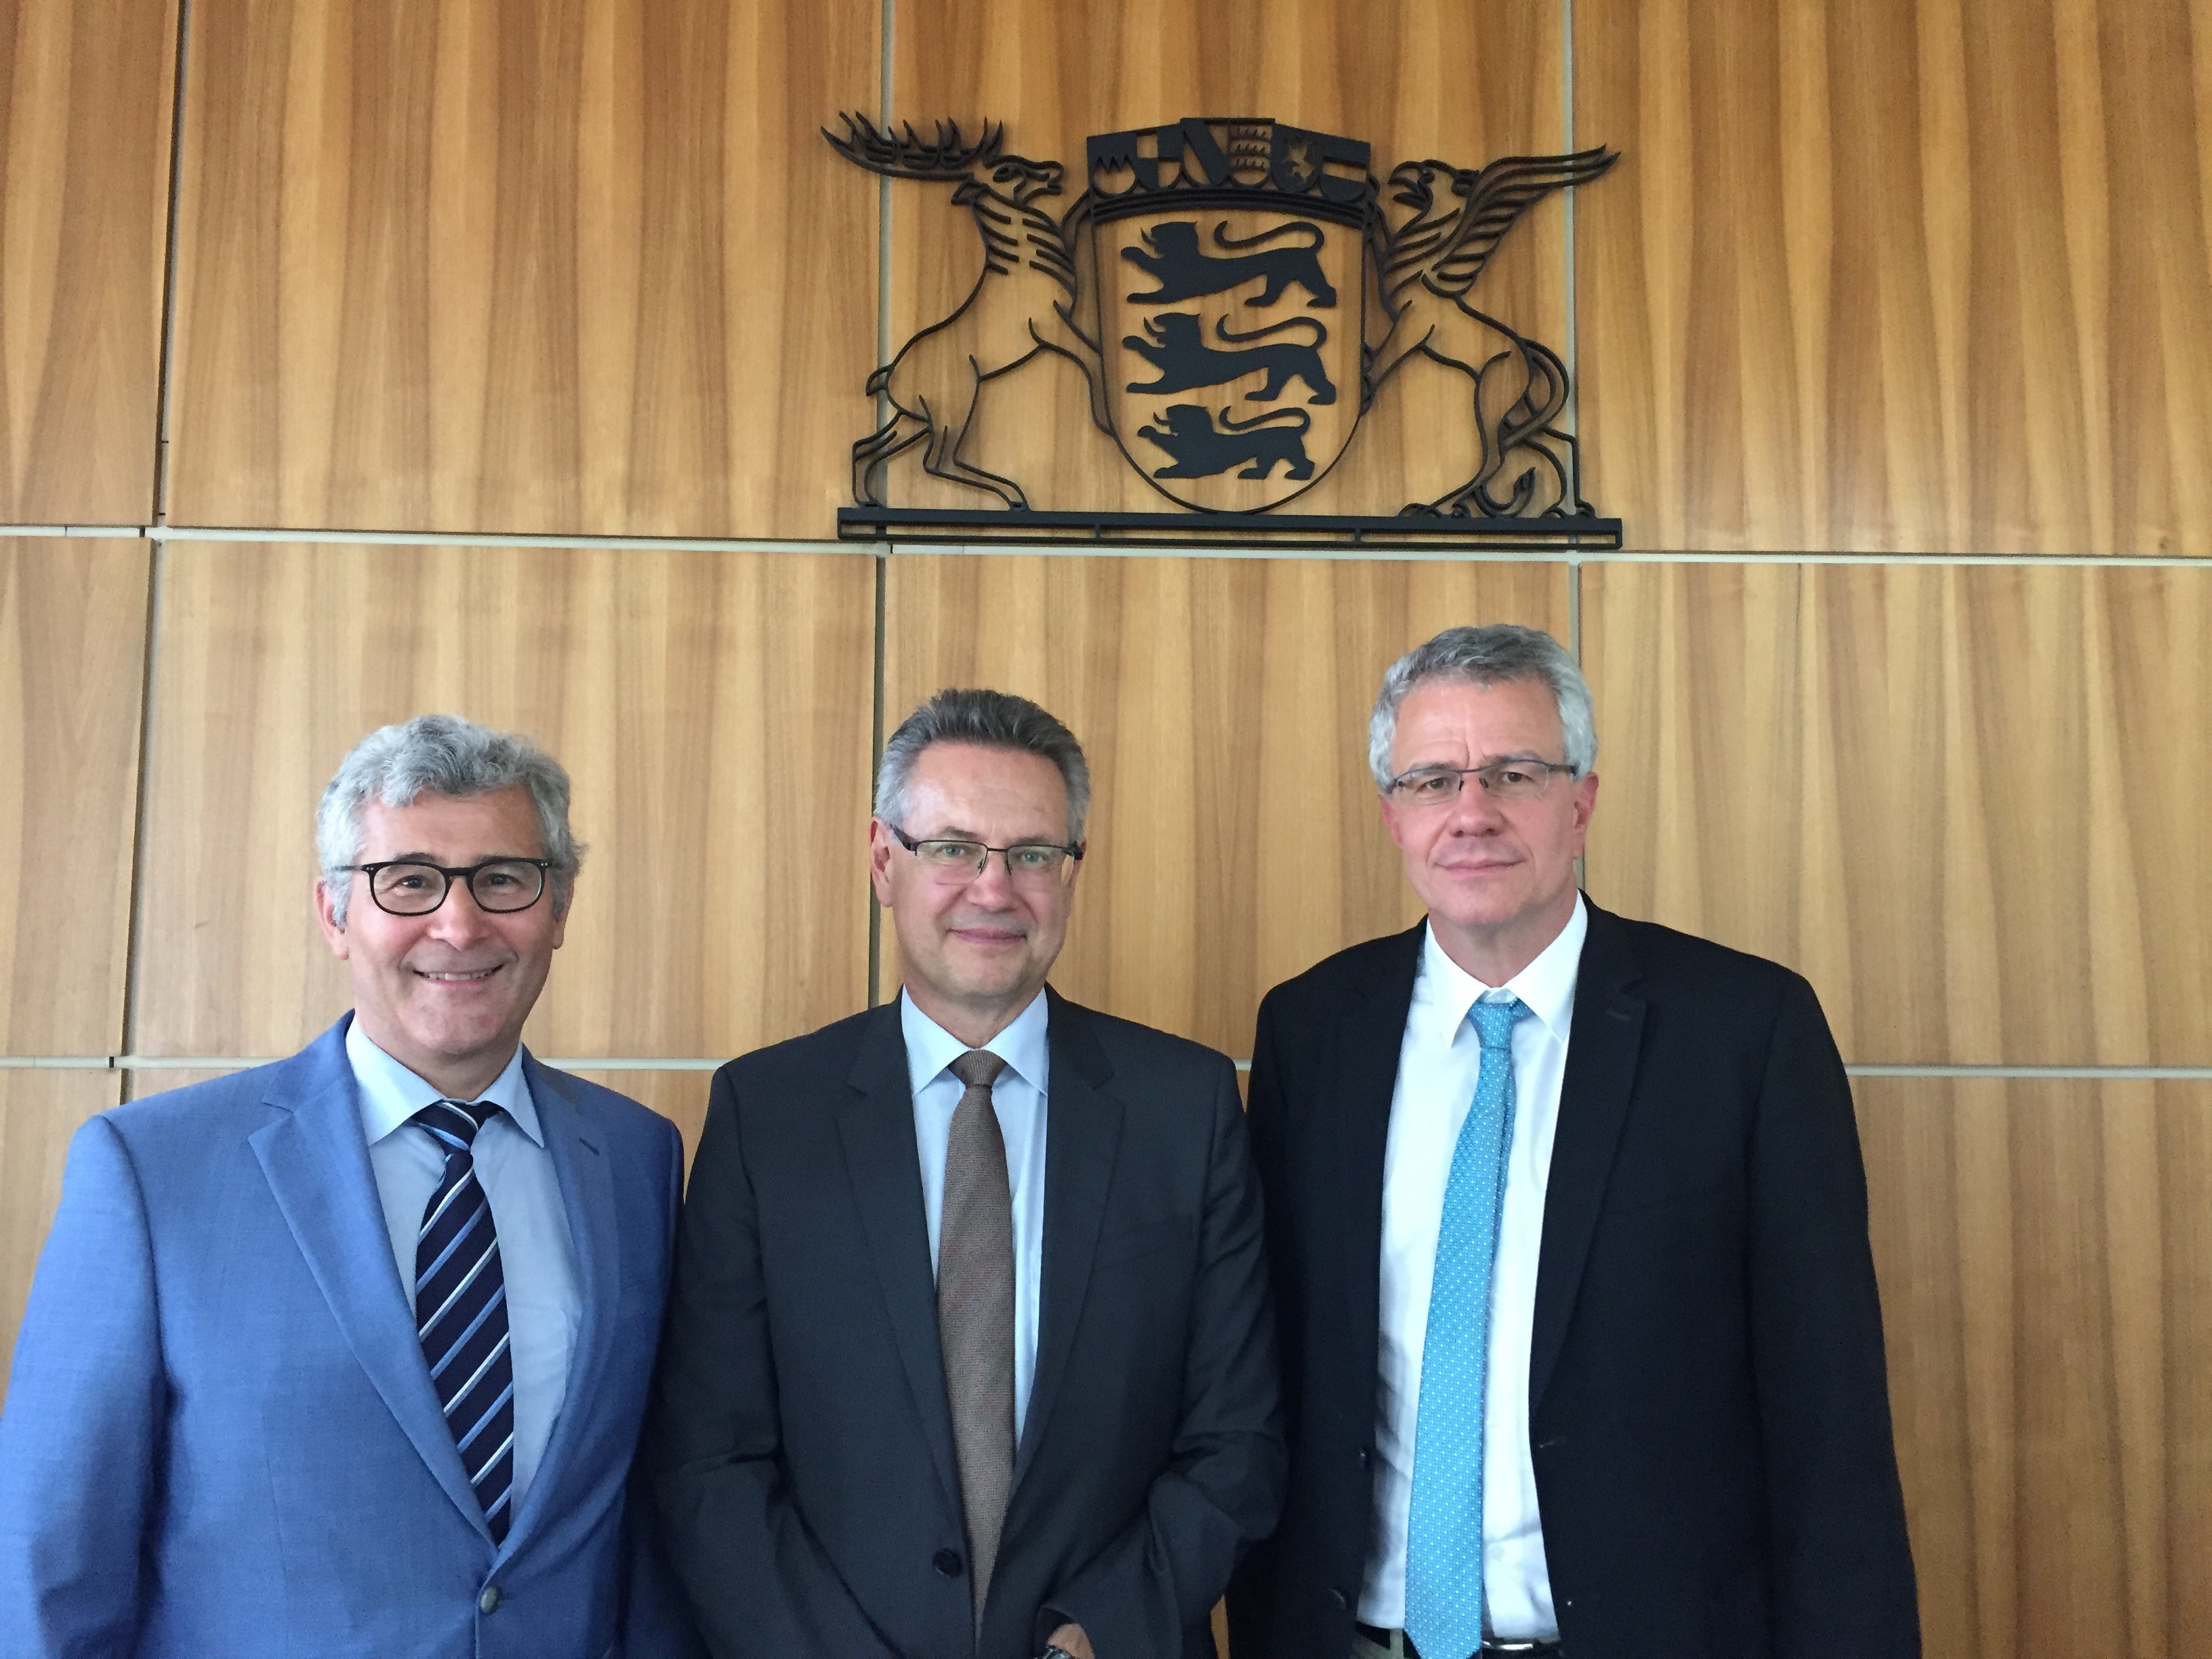 von links nach rechts: Präsident des Landgerichts Neff, Präsident des Oberlandesgerichts Riedel, stellvertretender Direktor Graf